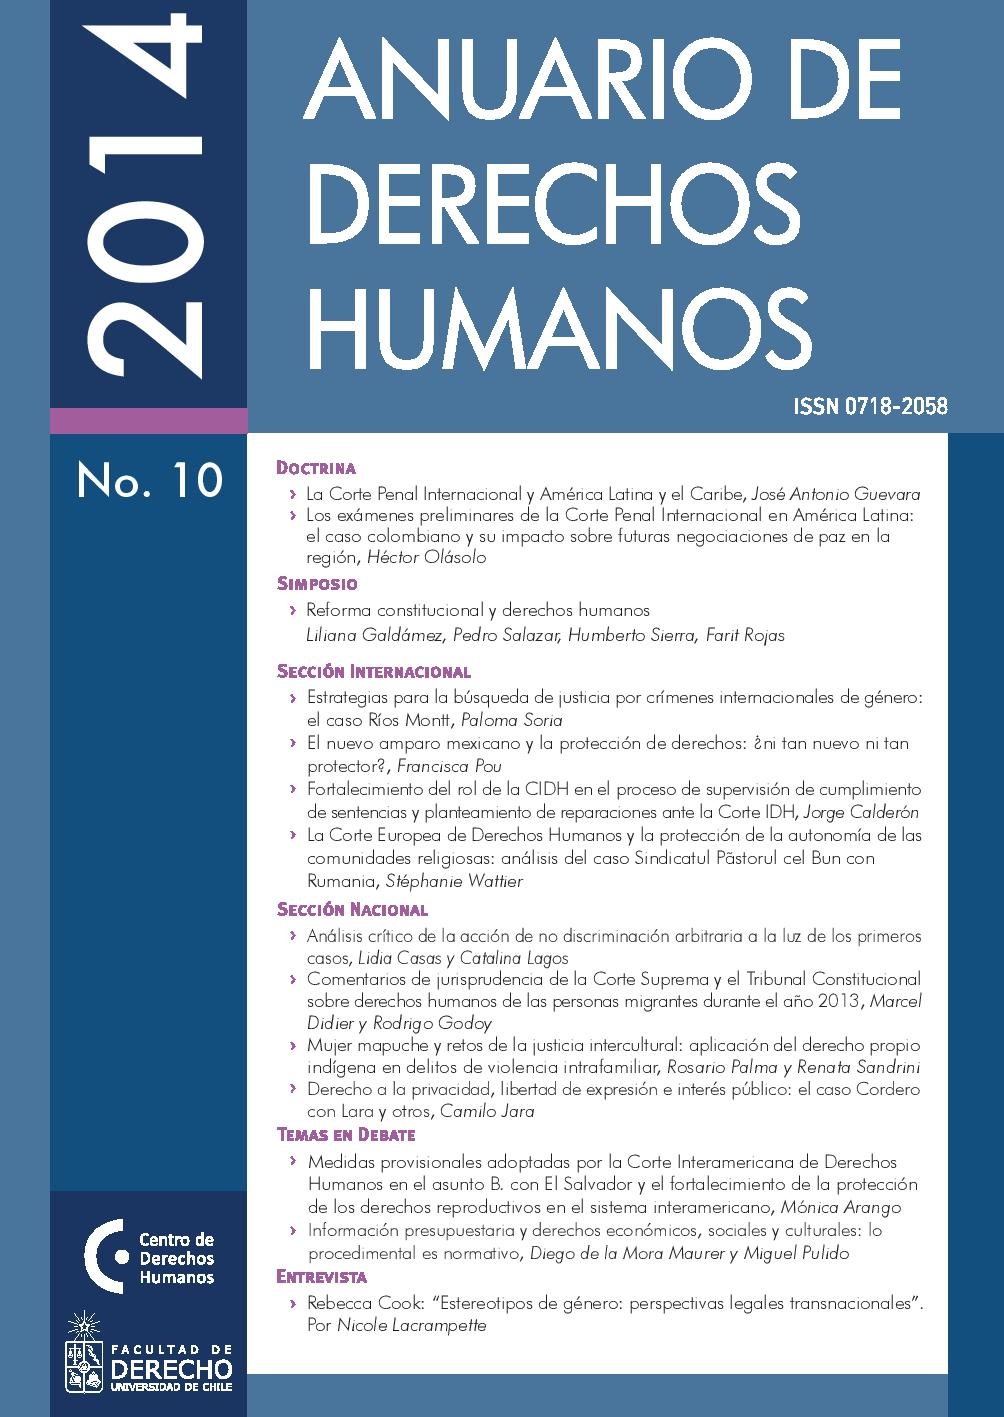 											Ver Núm. 10 (2014): Anuario de Derechos Humanos 2014
										